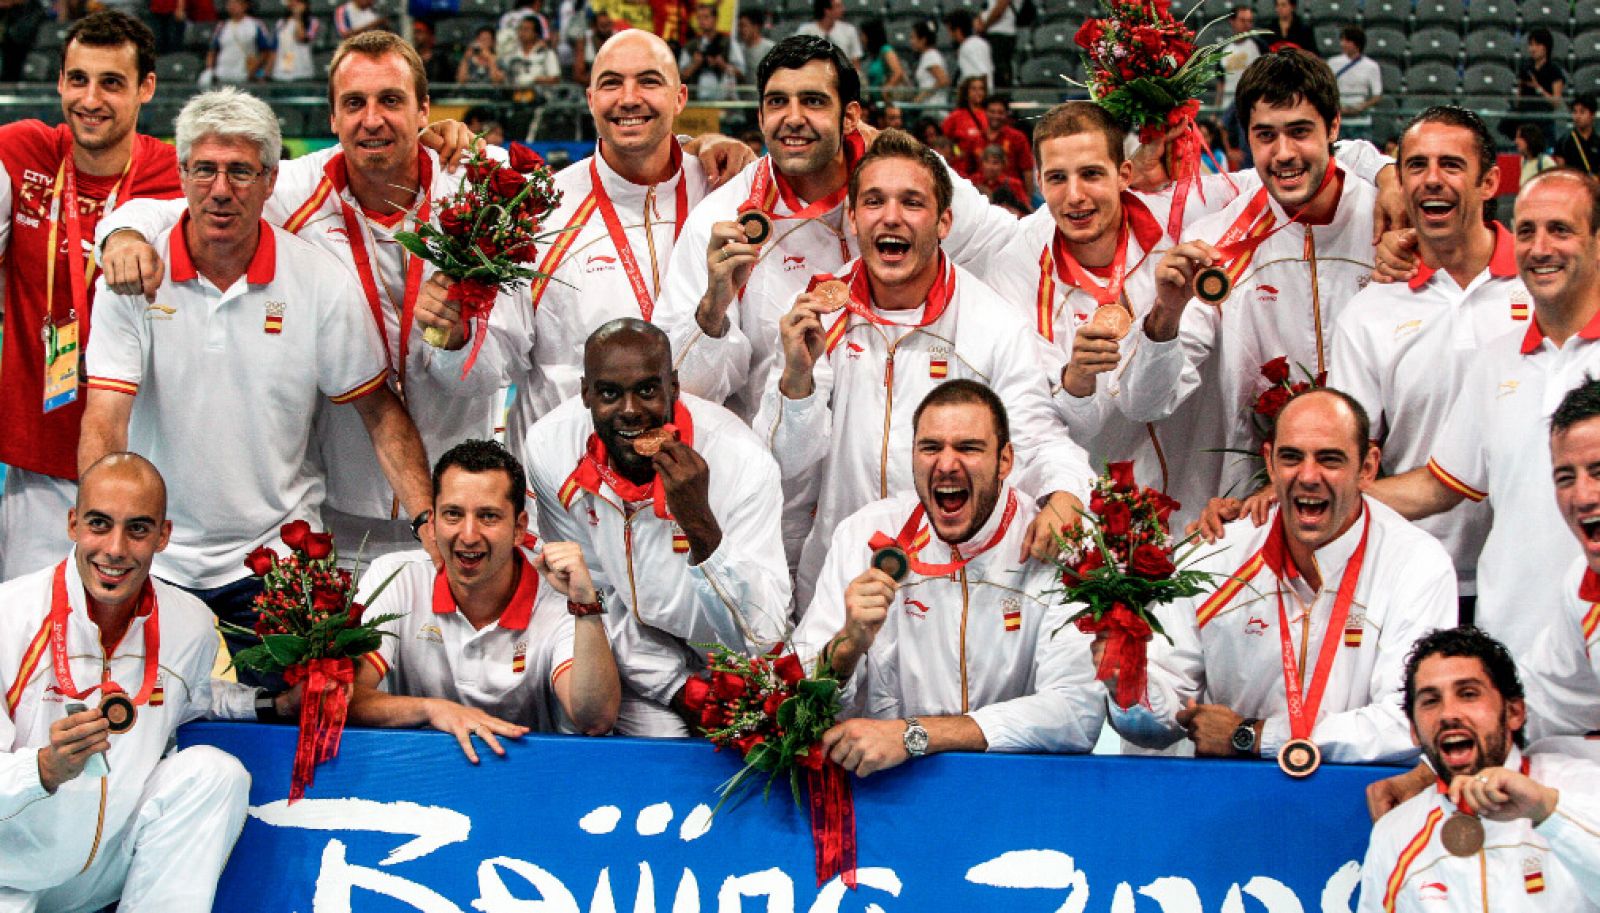 Este bronce fue el tercero y último hasta la fecha que ha ganado la selección masculina de balonmano en unos Juegos Olímpicos.